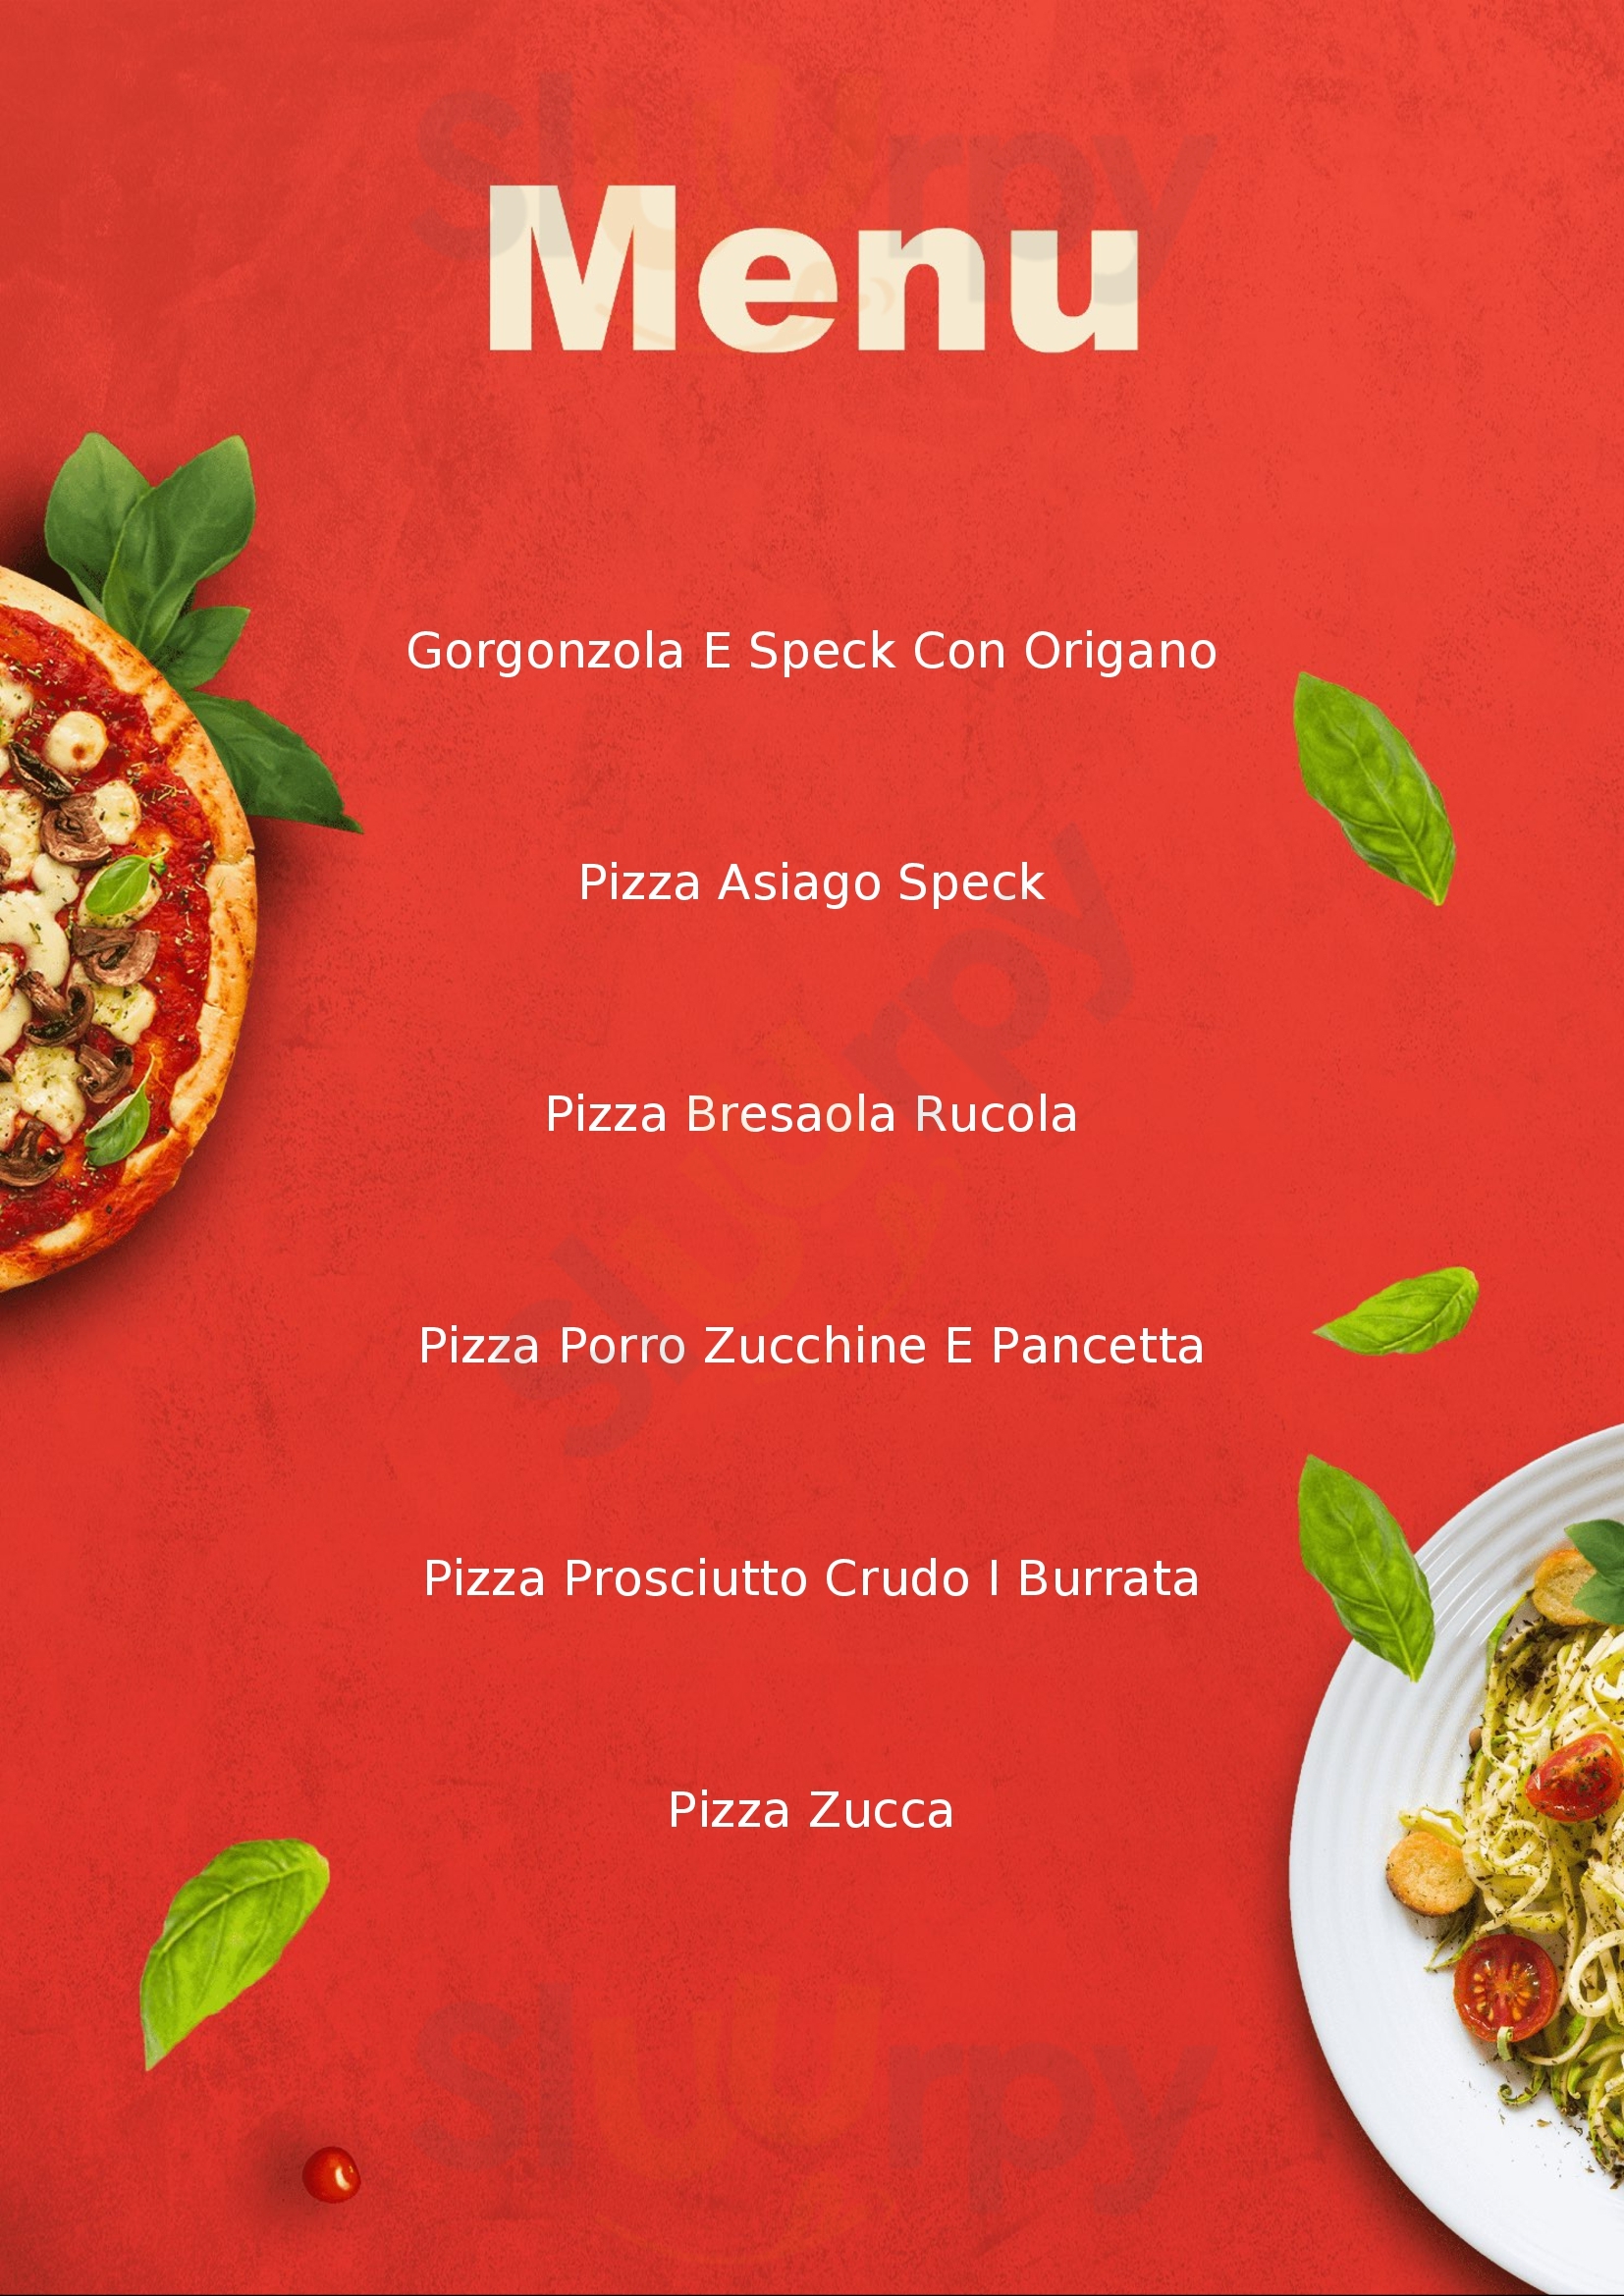 Pizzeria Scaligera Marostica menù 1 pagina